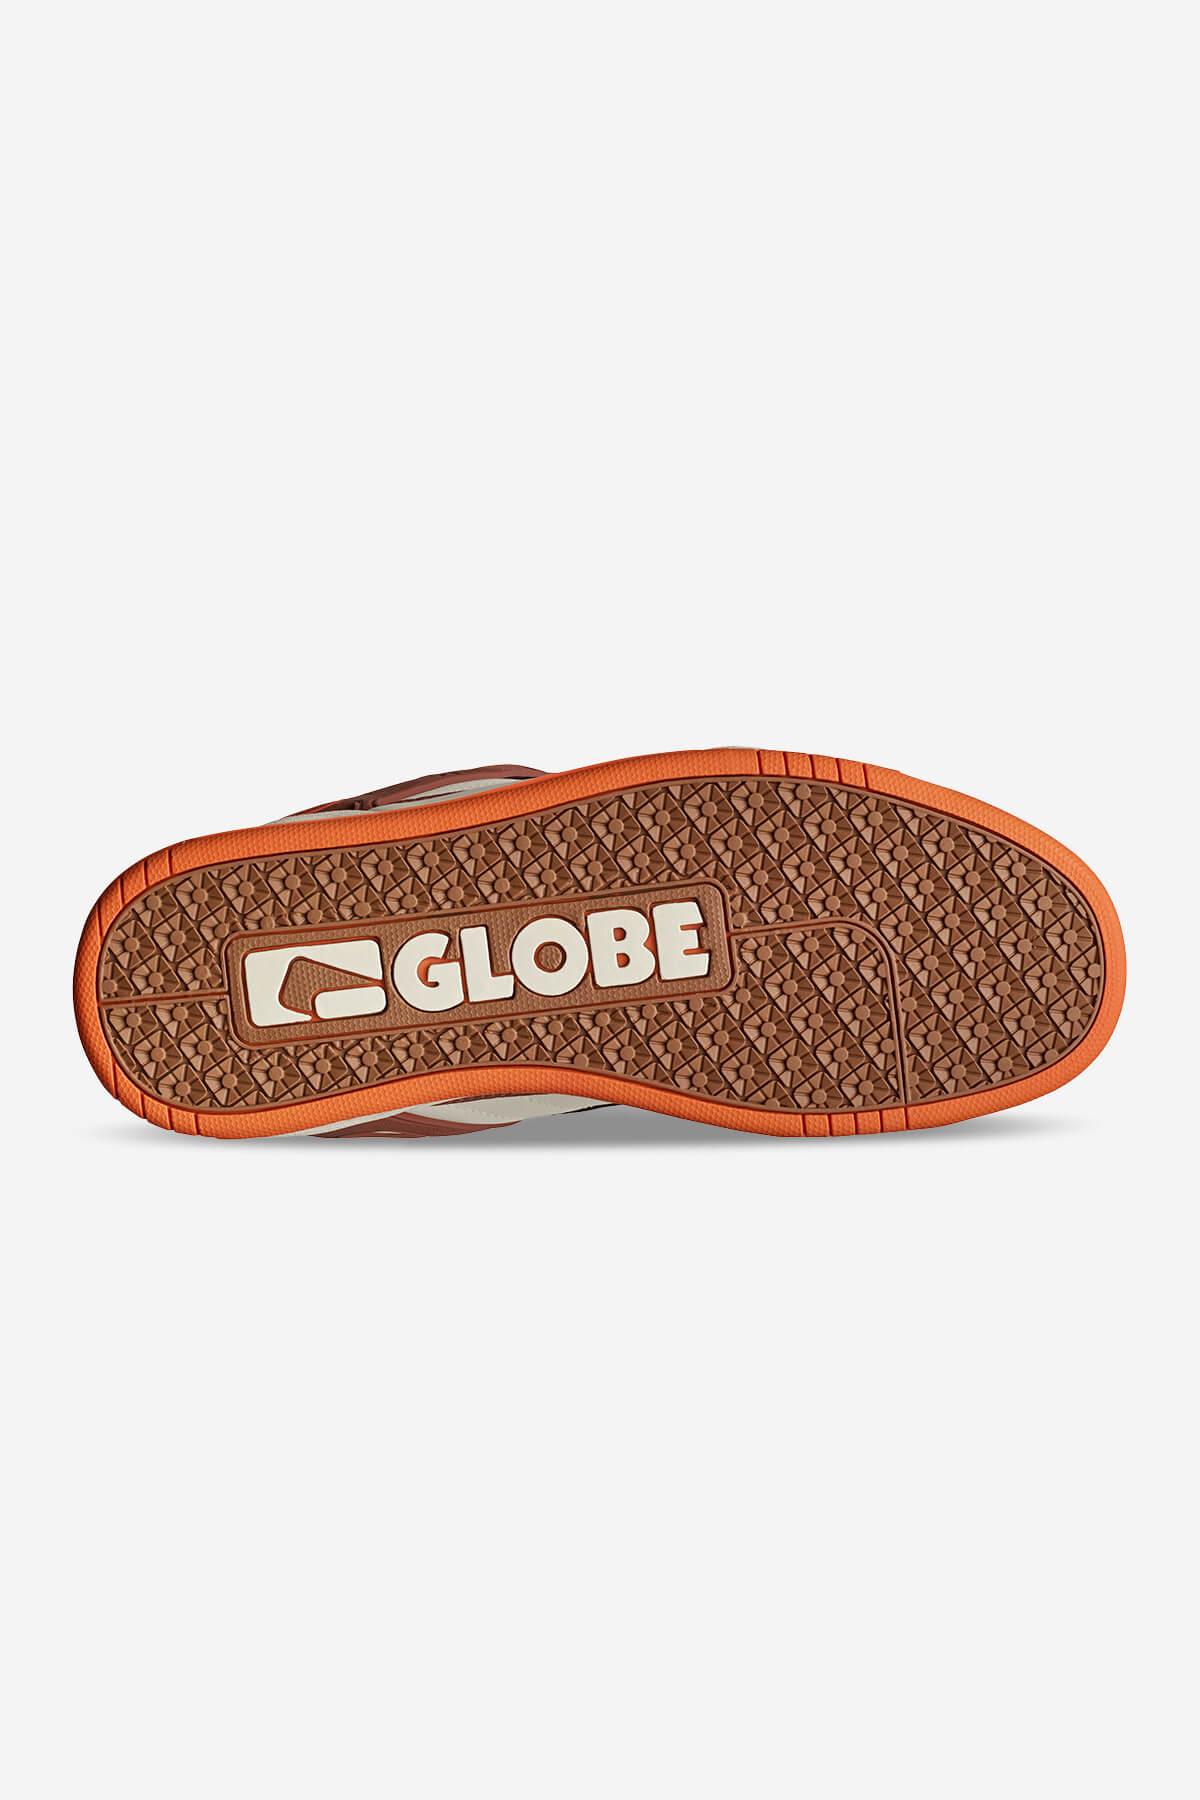 Globe - Tilt - Antiek/Mocha - skateboard Schoenen